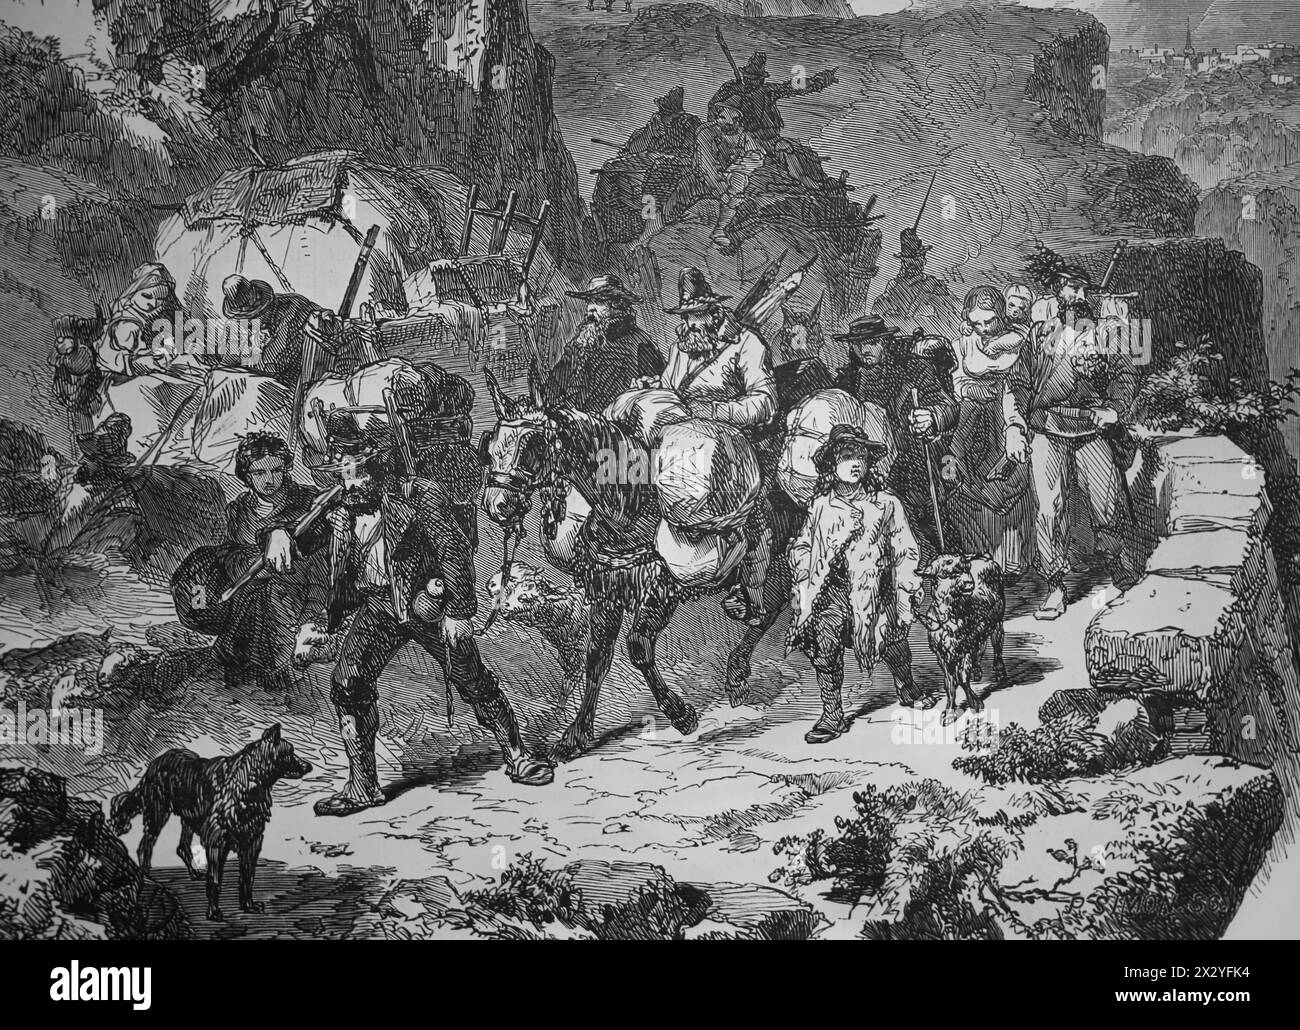 Risorgimento. Invasione del Trentino (1866). Le operazioni di milizia del Regno d'Italia affliggono l'Impero austriaco. La gente con Graribaldi a Trent Foto Stock